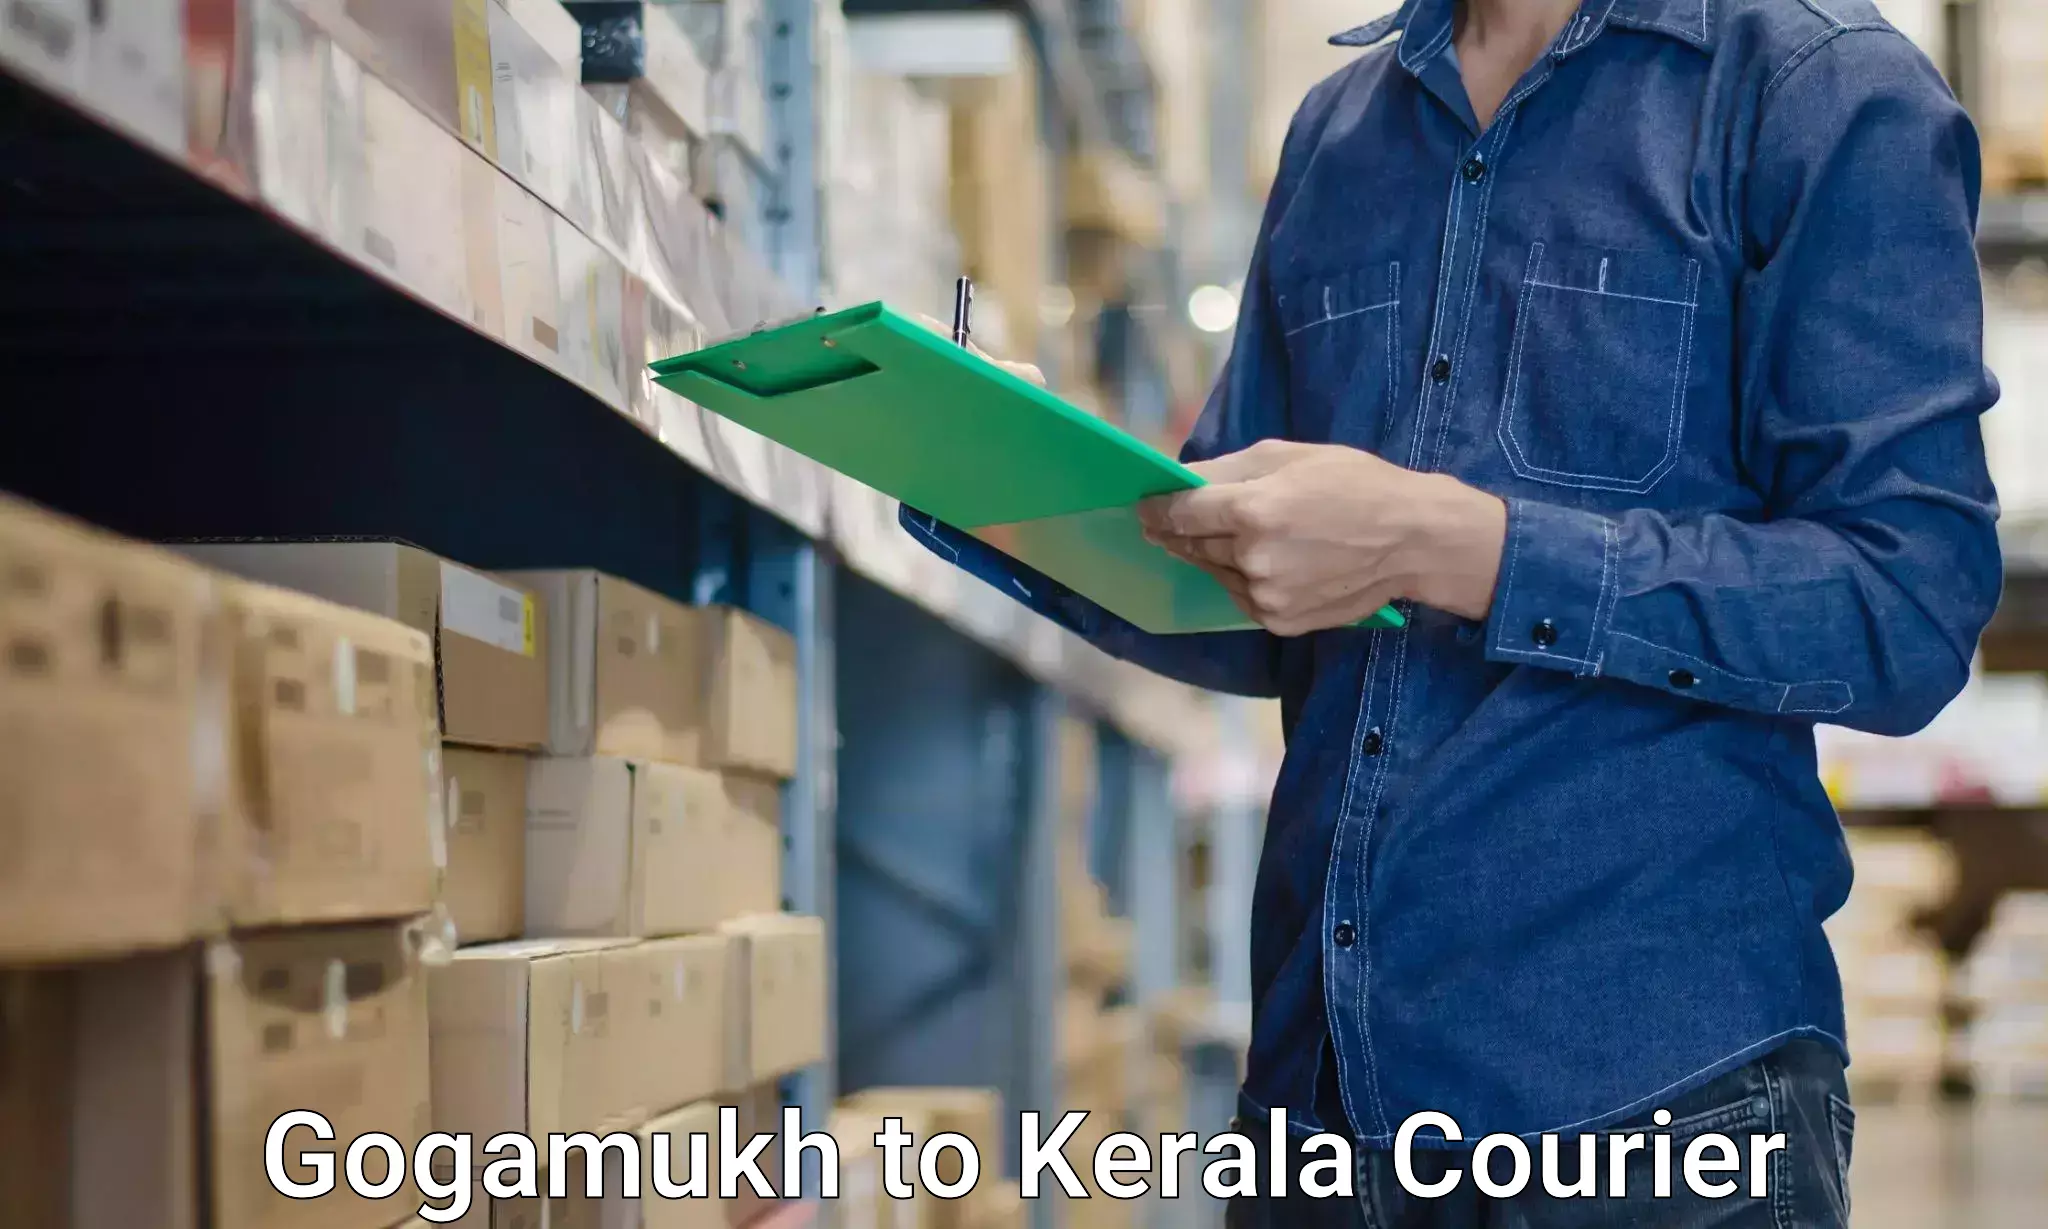 Furniture handling services Gogamukh to Kerala